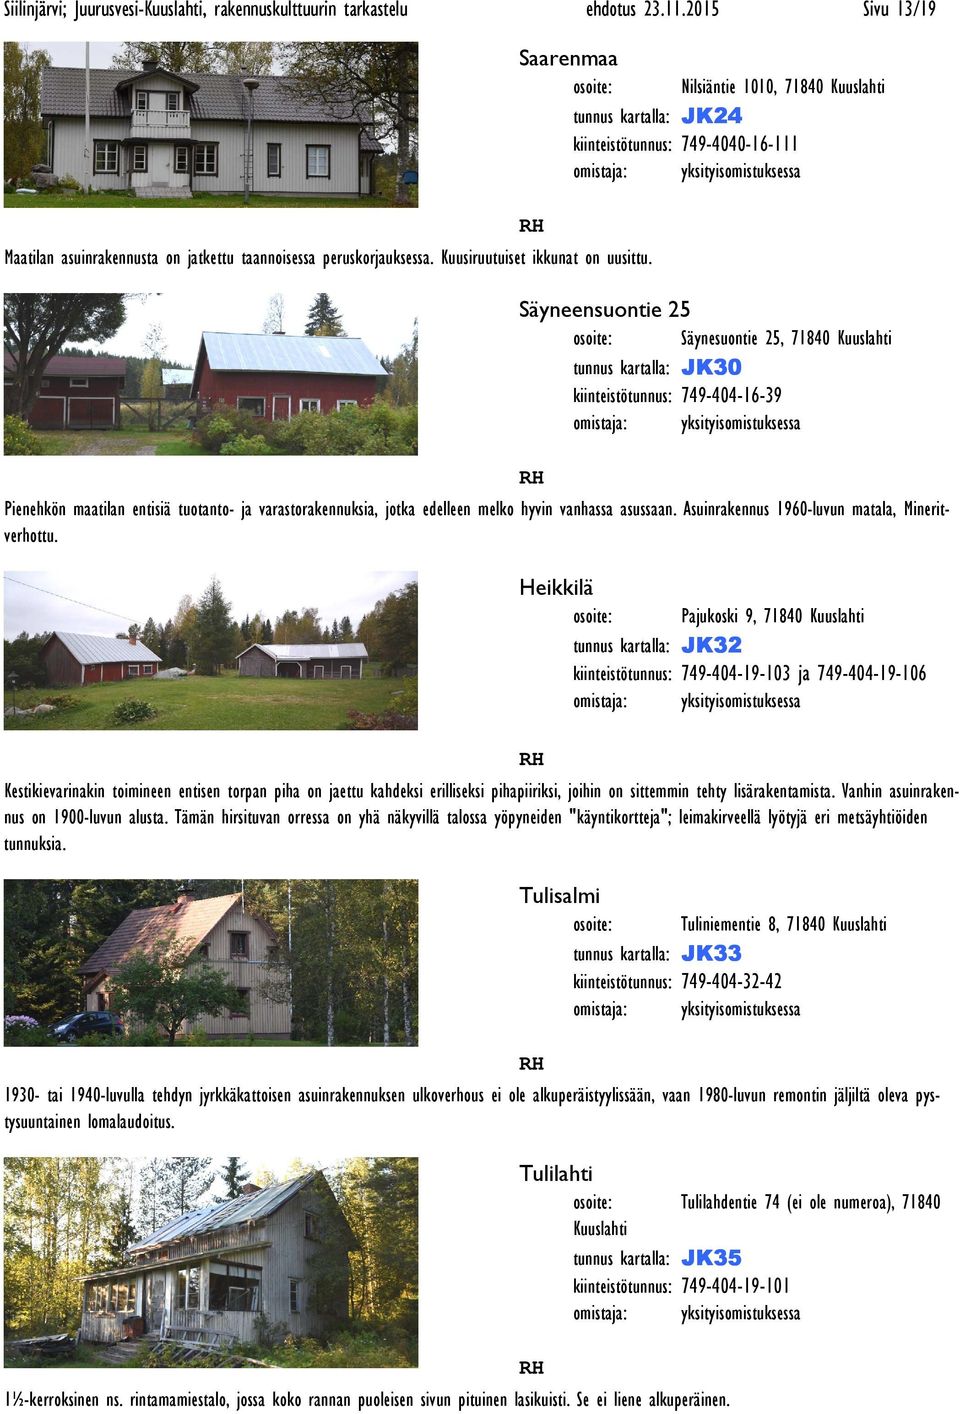 kiinteistötunnus: 749-404-16-39 Pienehkön maatilan entisiä tuotanto- ja varastorakennuksia, jotka edelleen melko hyvin vanhassa asussaan. Asuinrakennus 1960-luvun matala, Mineritverhottu.